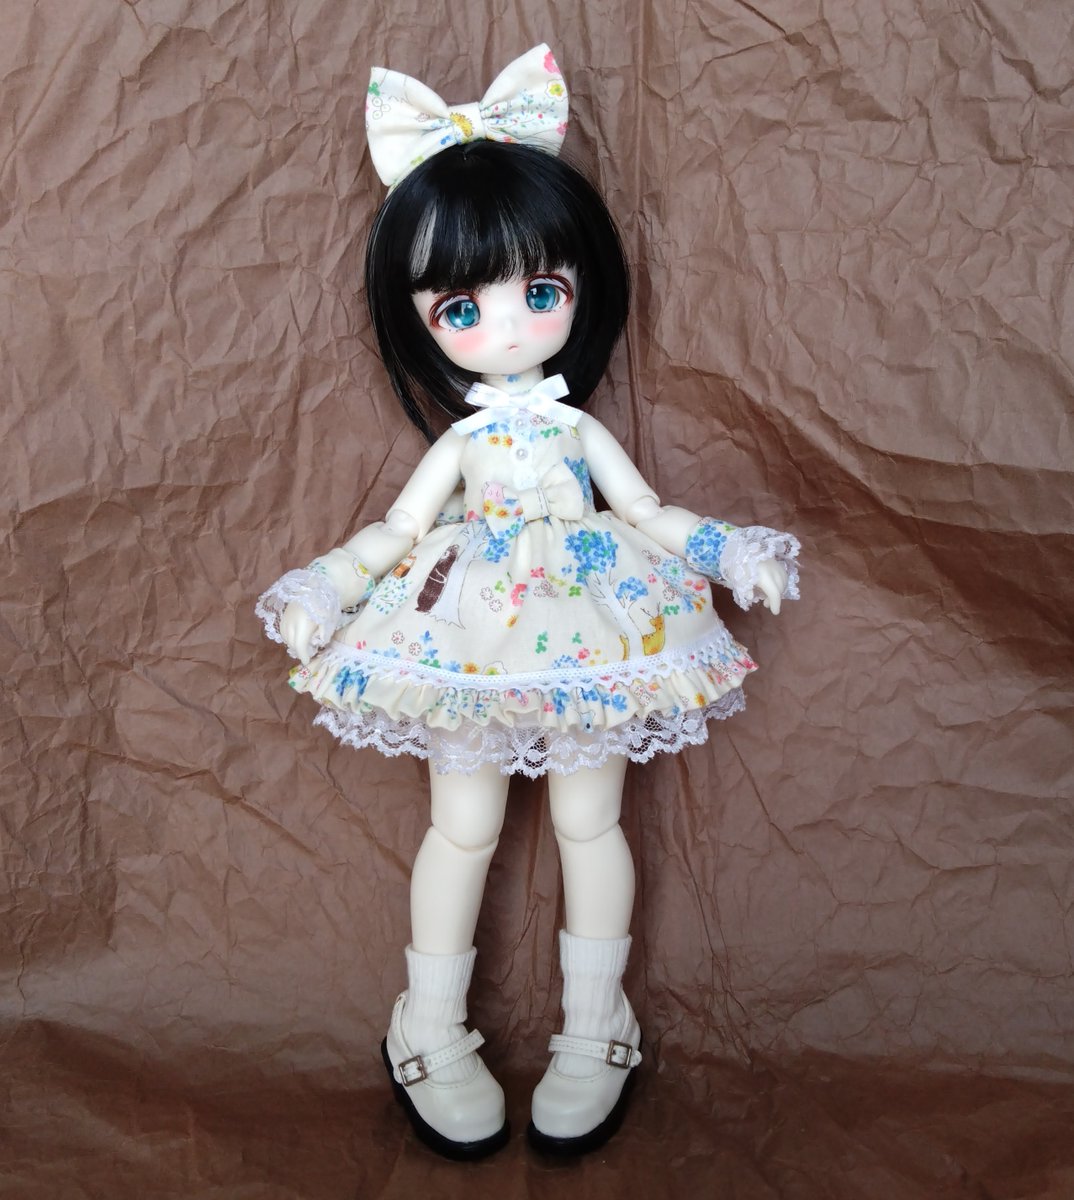 糸子 on Twitter: "TinyFoxのデビーちゃんの服がなんとか完成。いつものお迎え服です。アイはコホリンドリュー